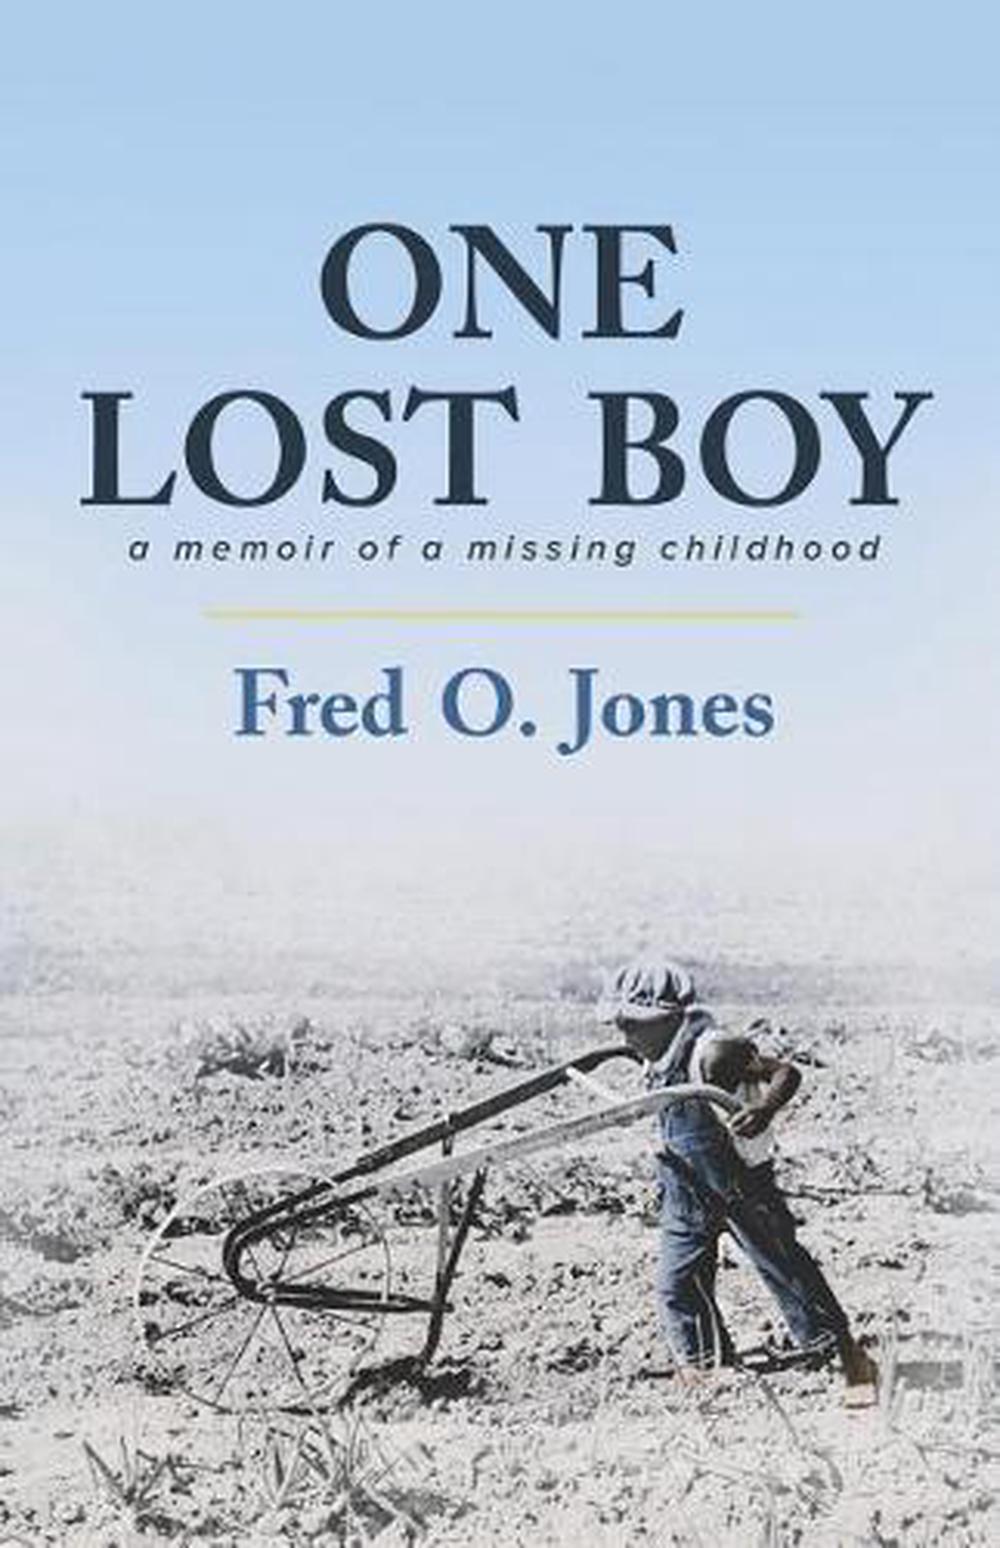 Little Boy Lost by J.D. Trafford